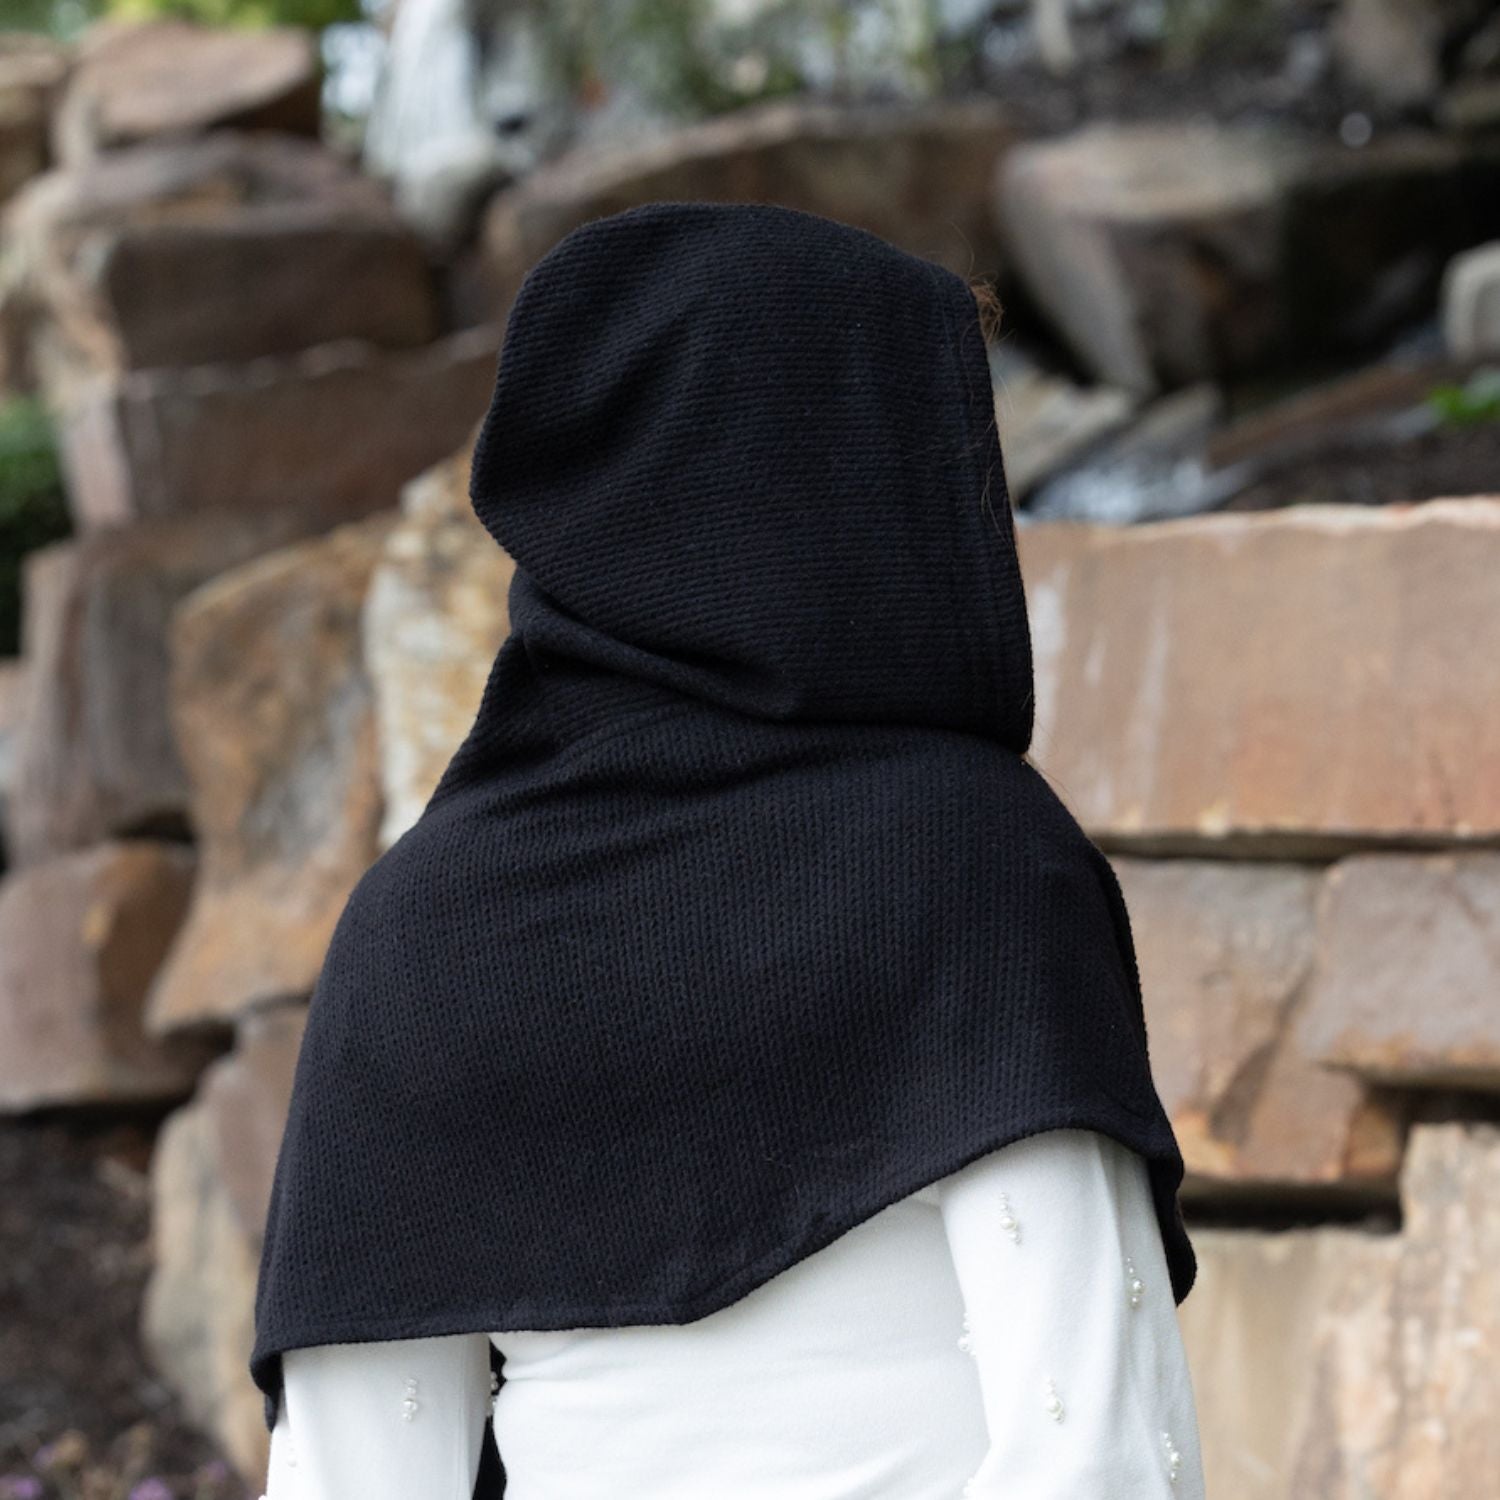 SHOLDIT Multi-Pocket Hoodie Scarf Uptown Black shown hood up